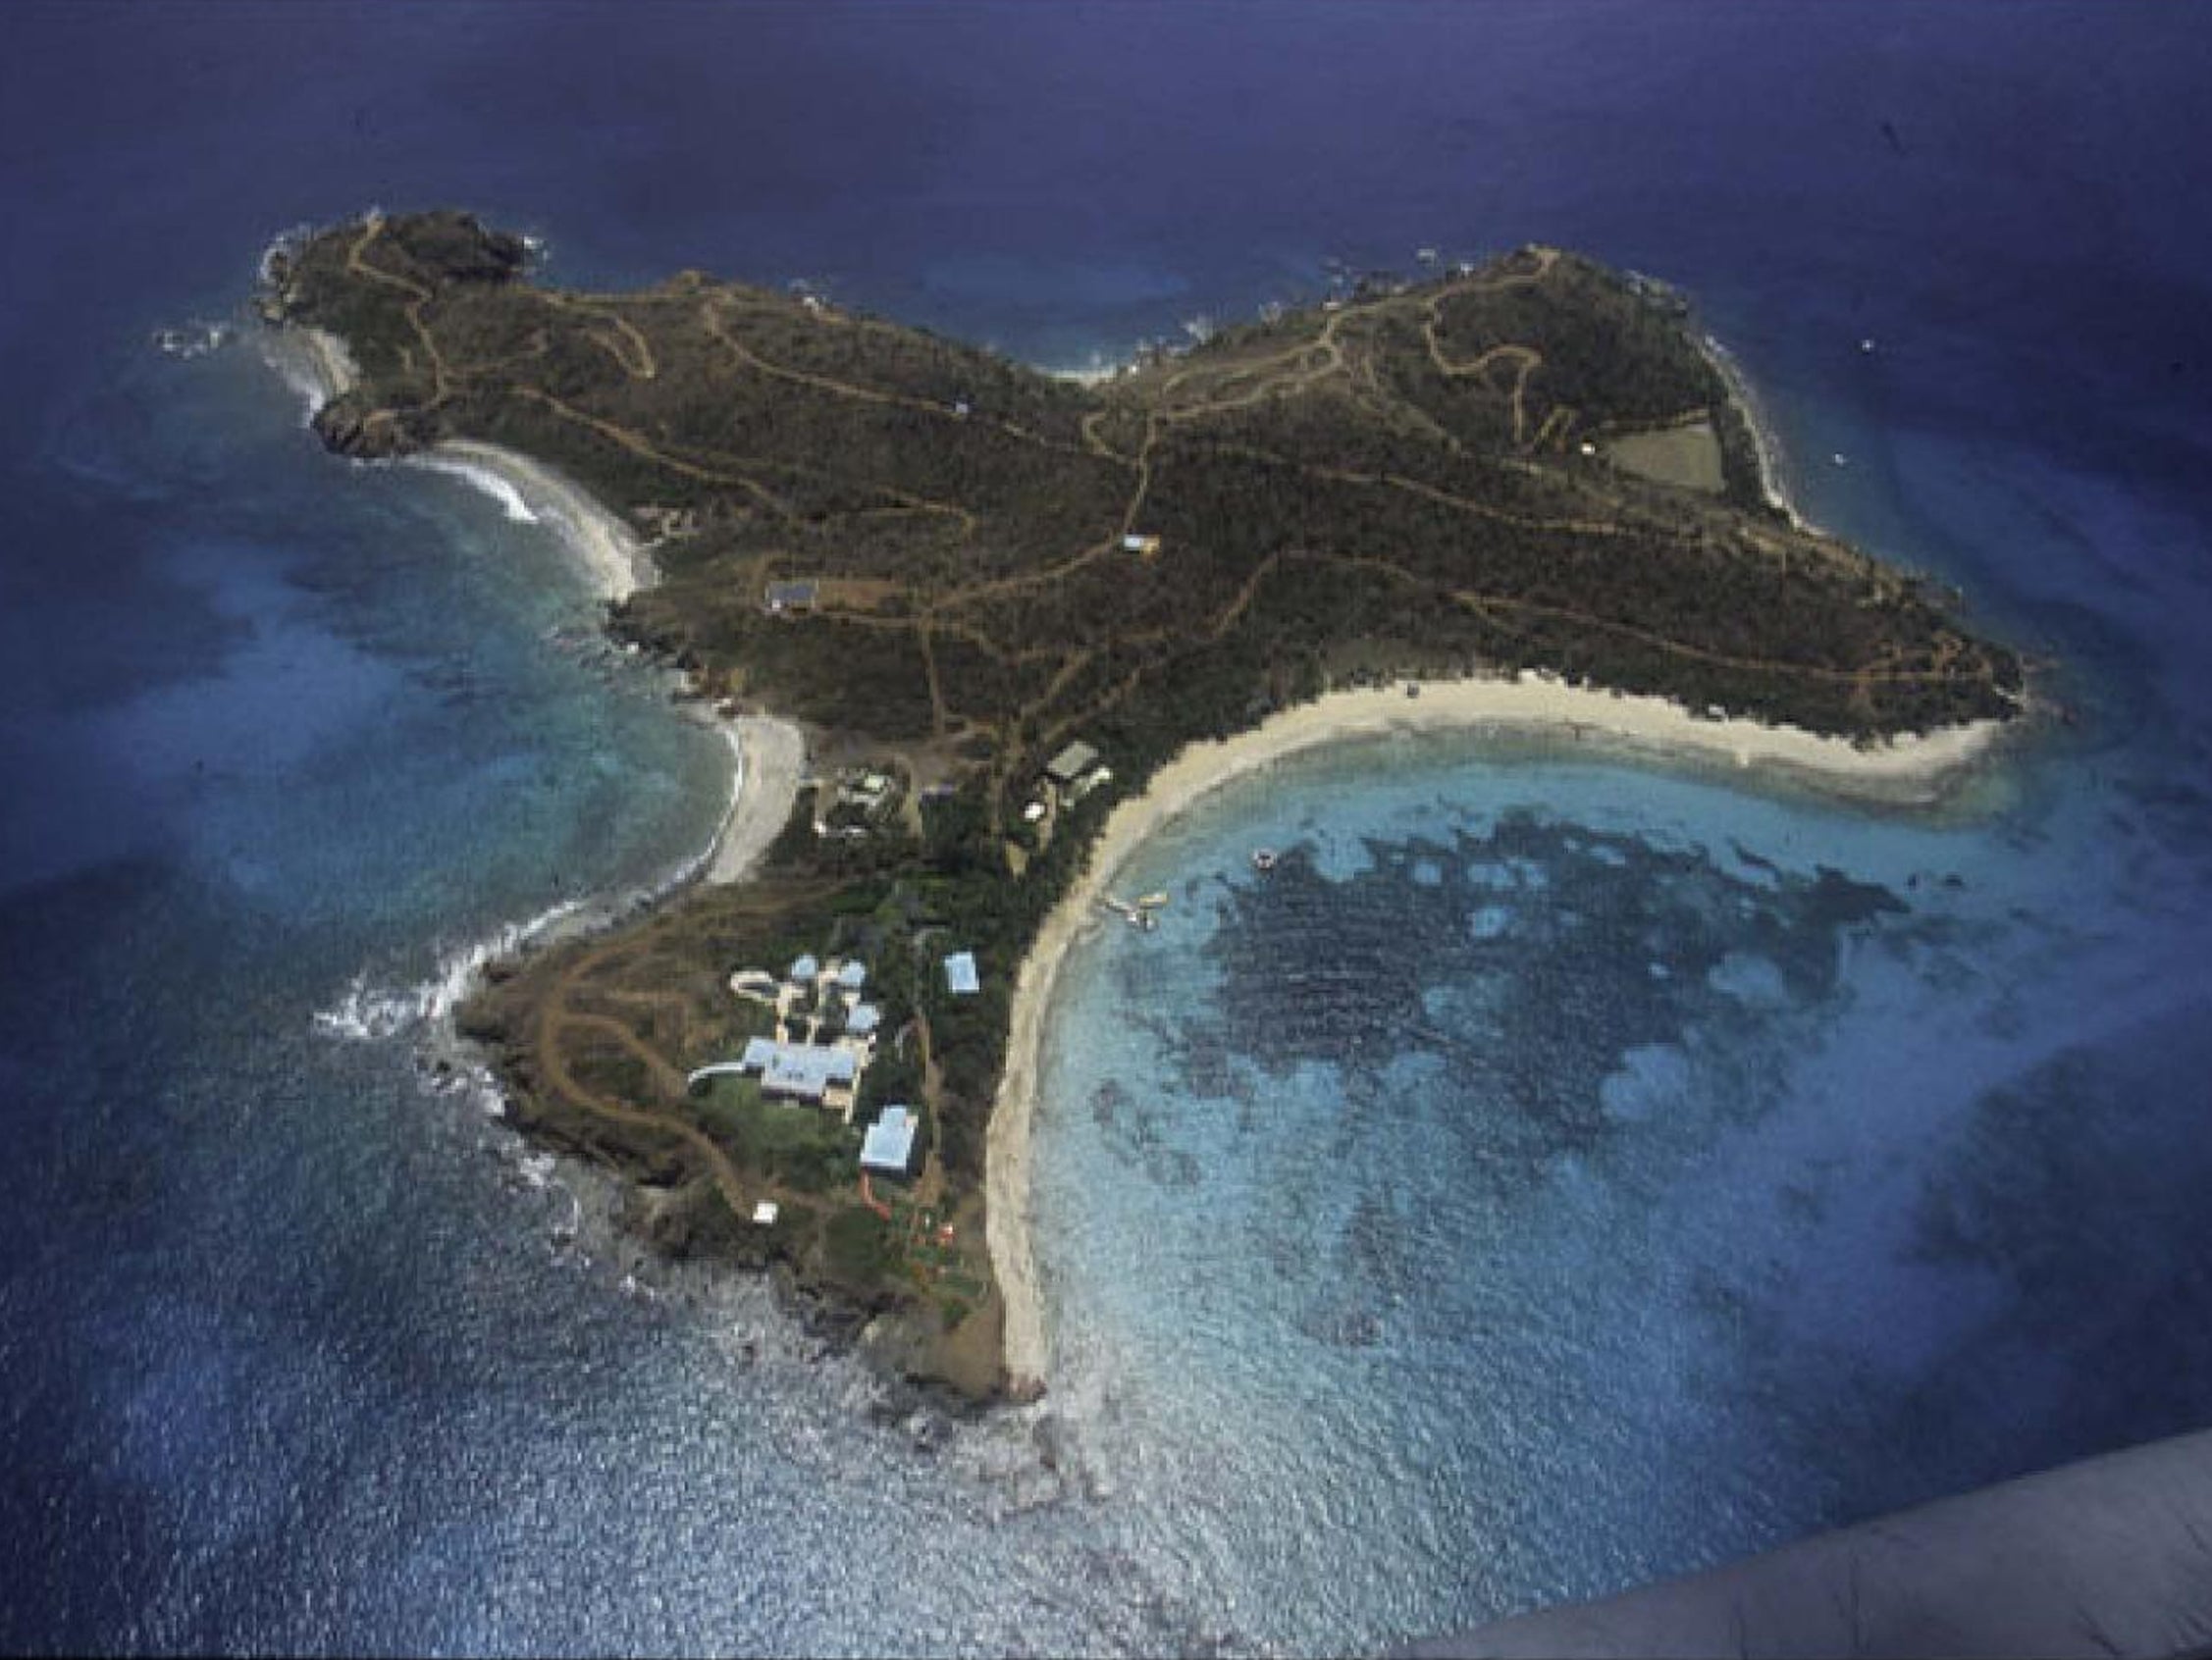 Foto sin fecha obtenida por el Departamento de Justicia de EE.UU. de una vista aérea a la isla privada de Jeffrey Epstein